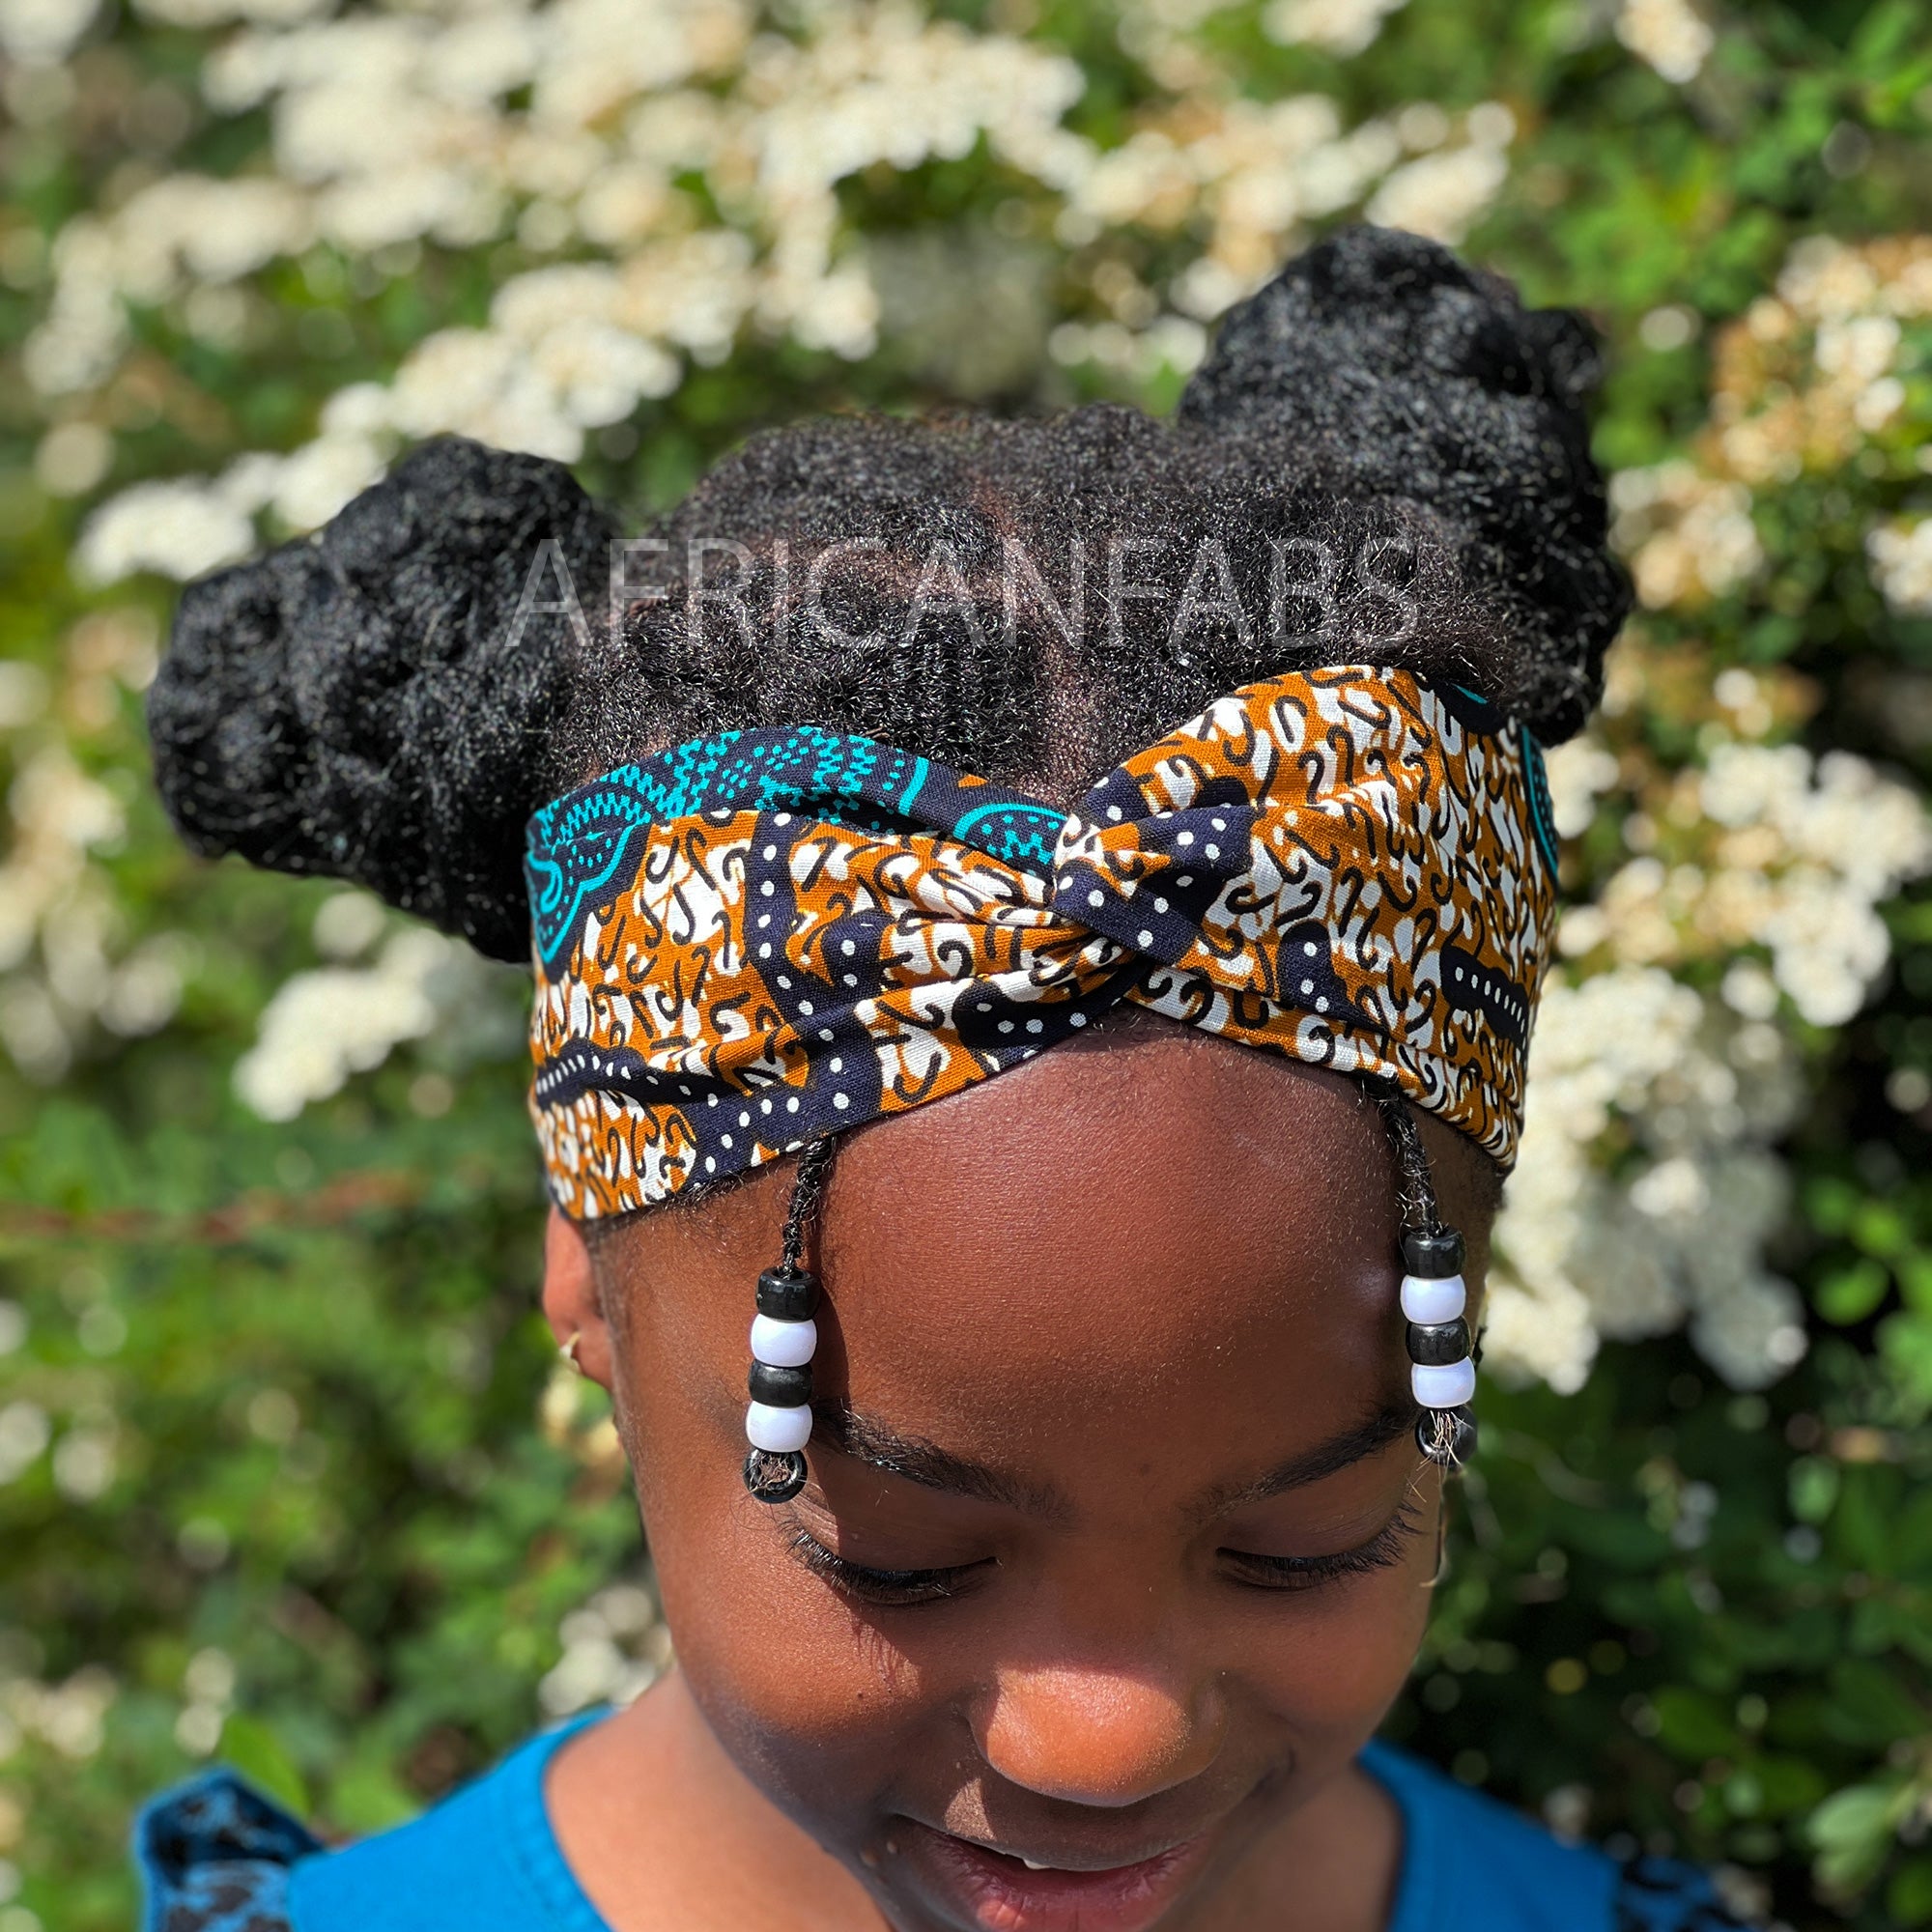 Haarband / Stirnband / Kopfband für Kinder in Afrikanischer Print - Blau / Senf klassisch